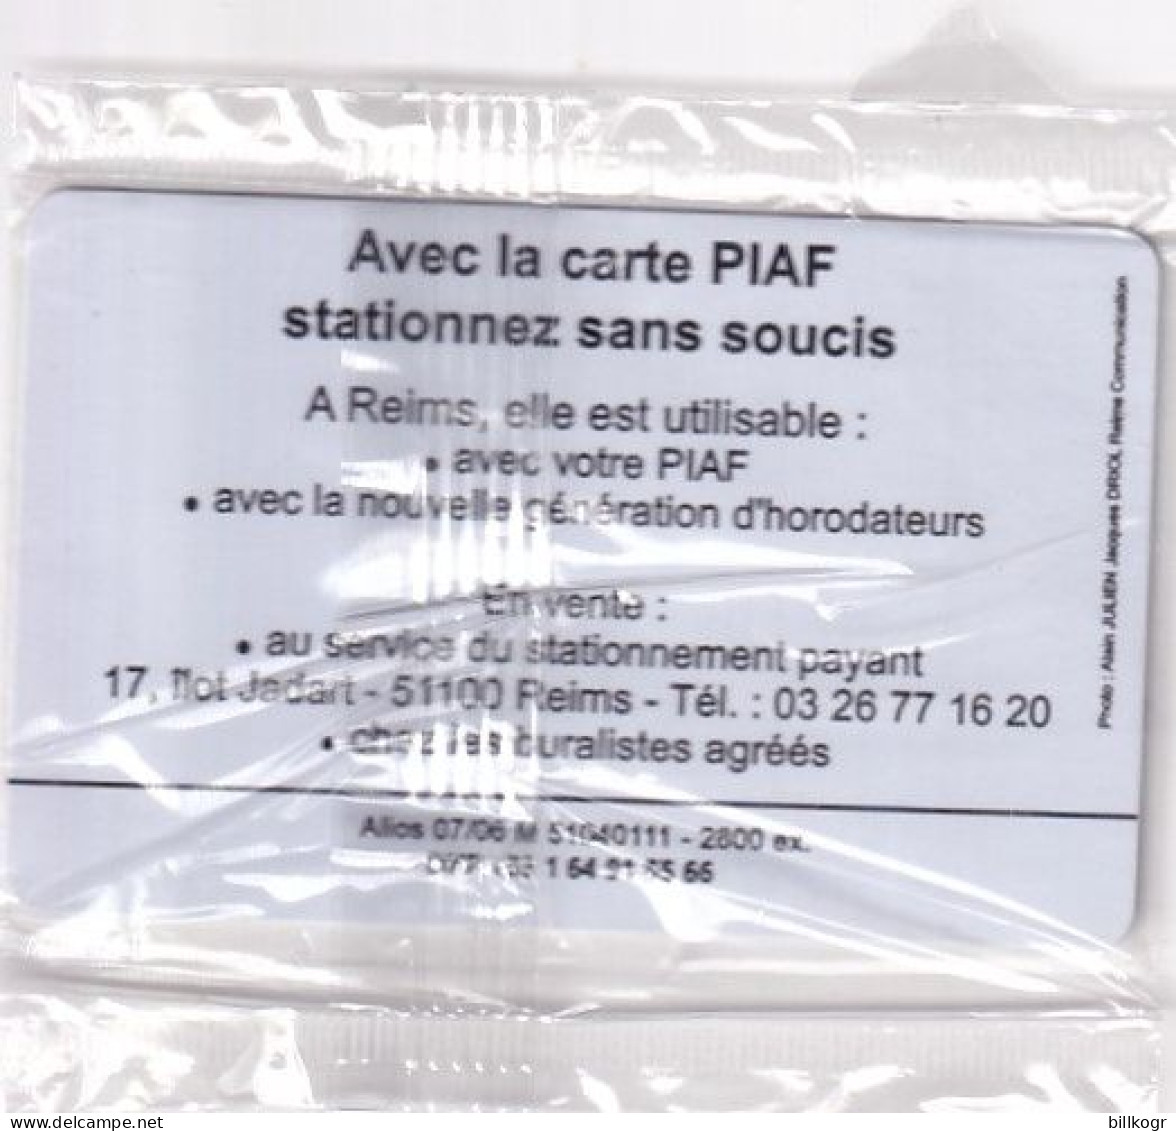 FRANCE - Le Piaf/Ville De Reims 75 Unites, Tirage 2800, 07/06, Mint - Parkkarten